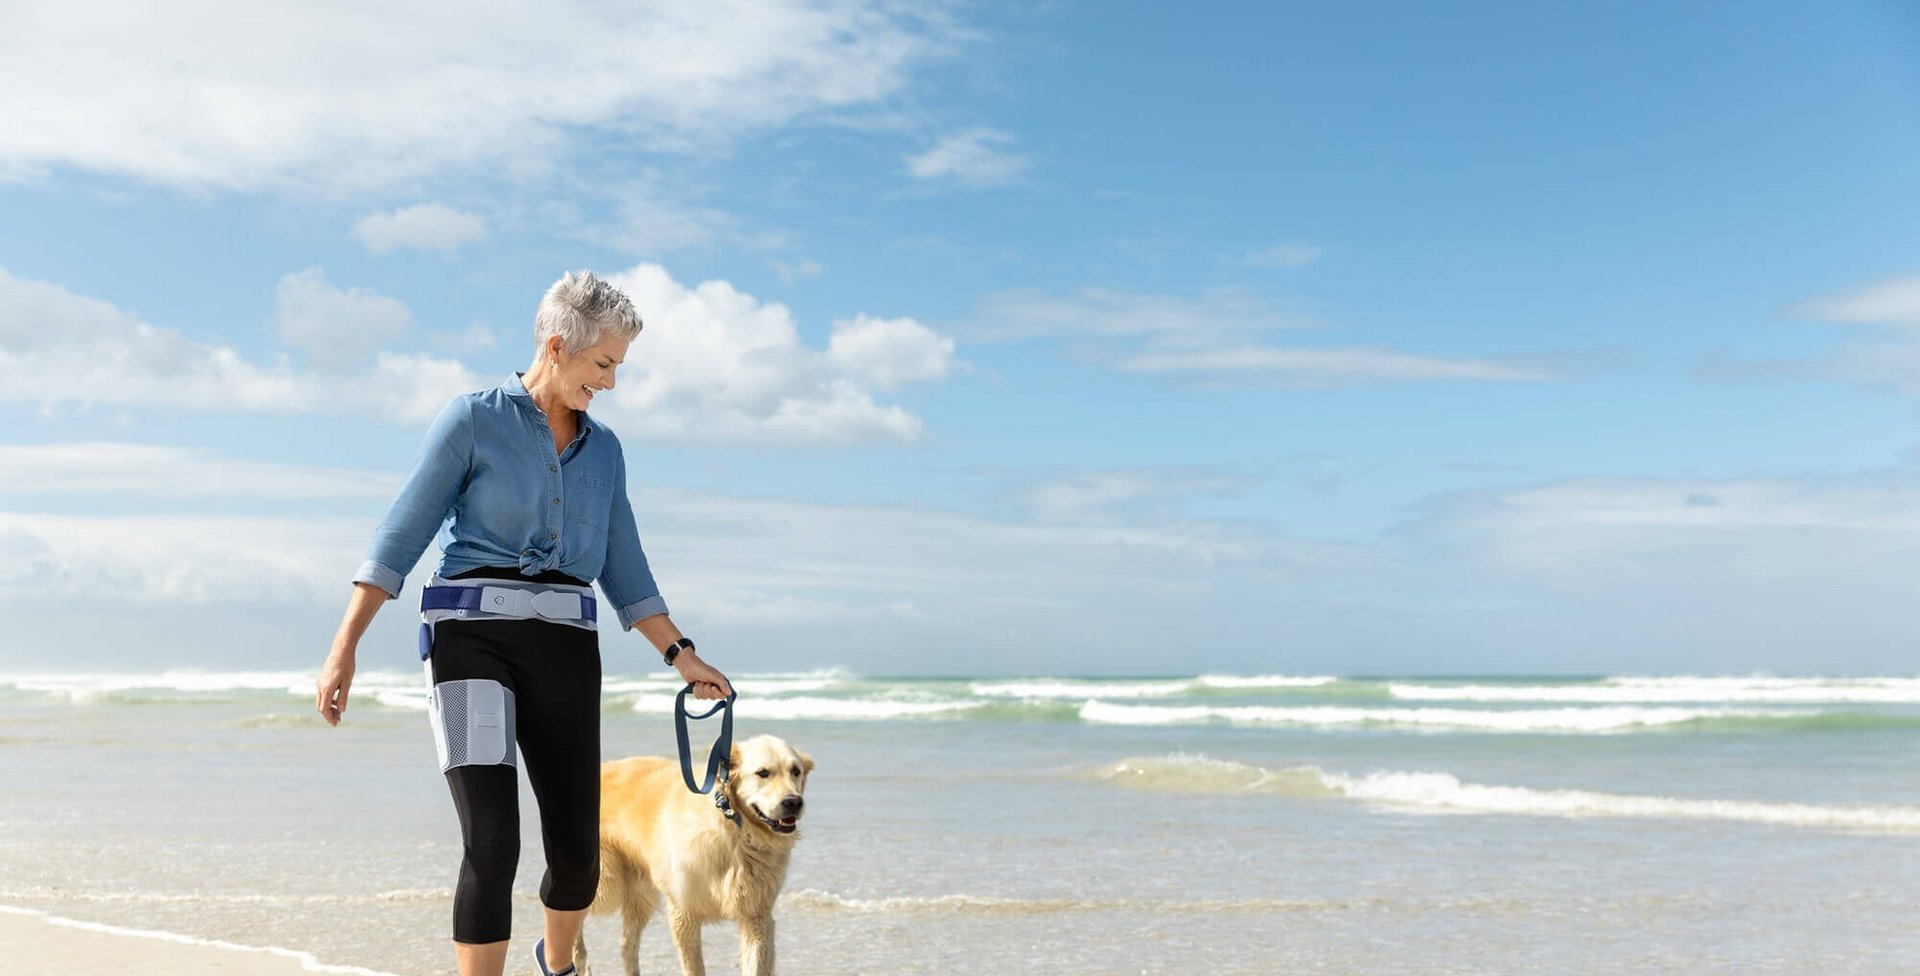 Das Bild zeigt eine ältere Frau beim Strandspaziergang mit ihrem Hund. Die Frau trägt eine CoxaTrain Orthese, die speziell für Hüftarthrose-Patienten entwickelt wurde.